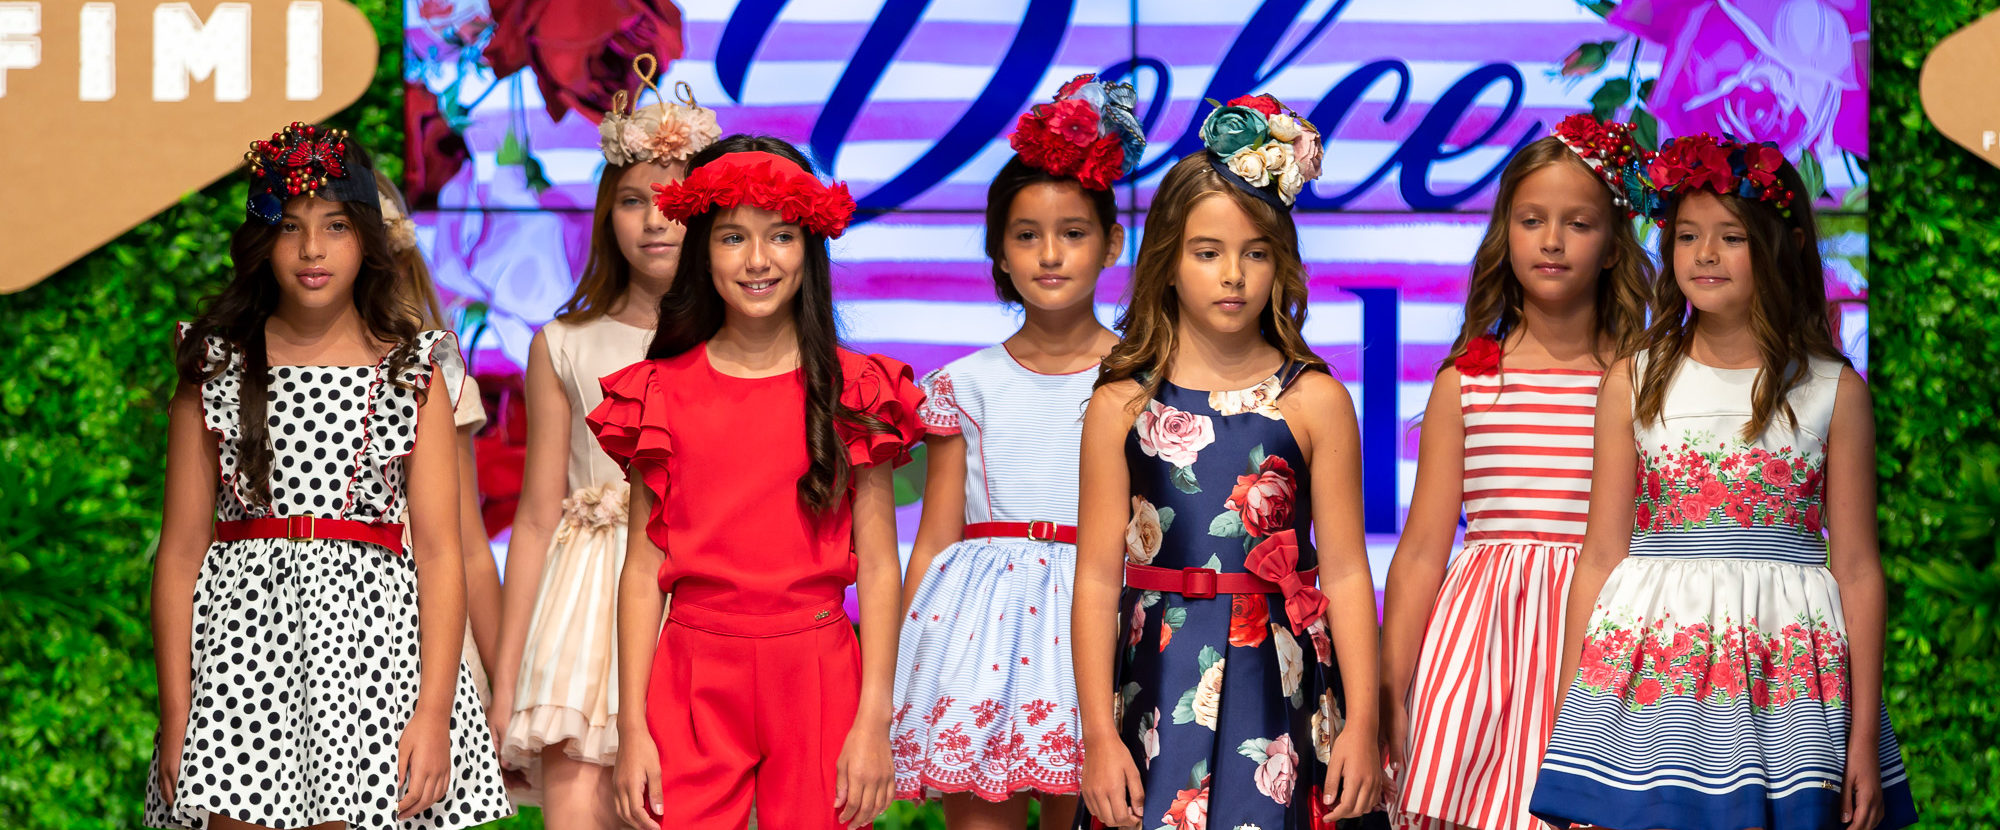 Lo que vimos en FIMI: Tendencias en moda infantil para la próxima verano 2020 - Blog MissBaby